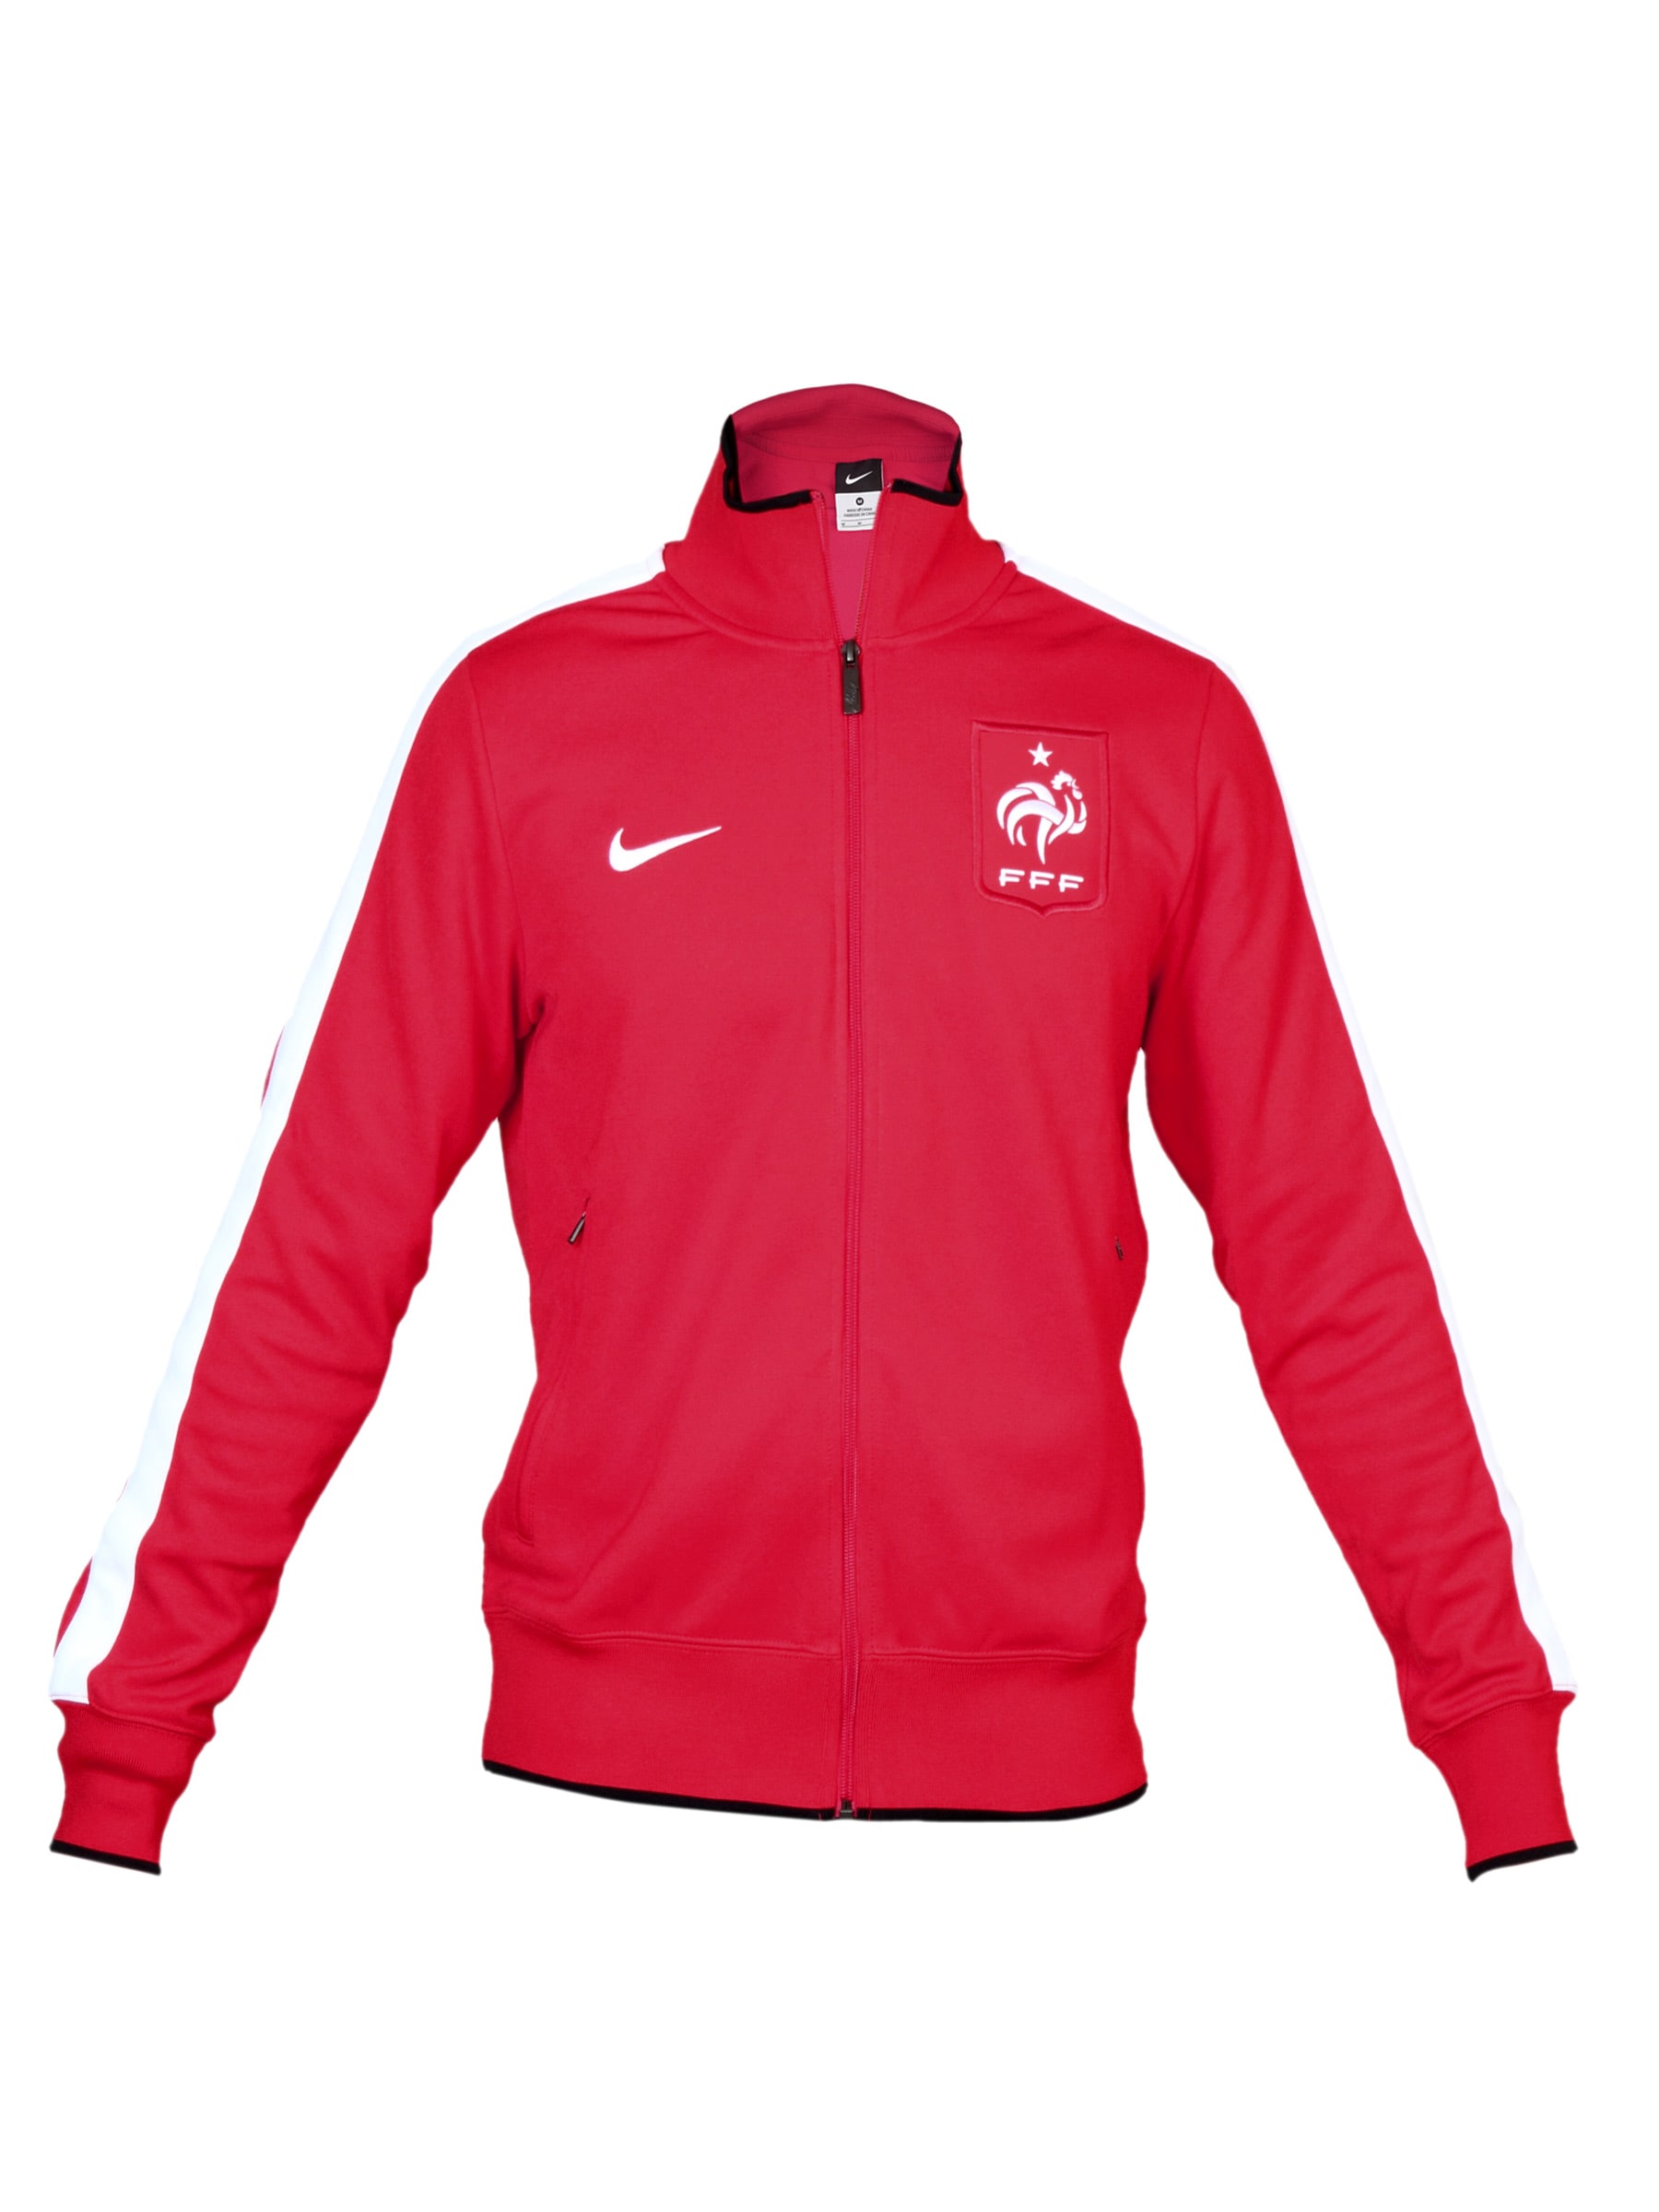 Nike Men FFF N98 Red Jacket